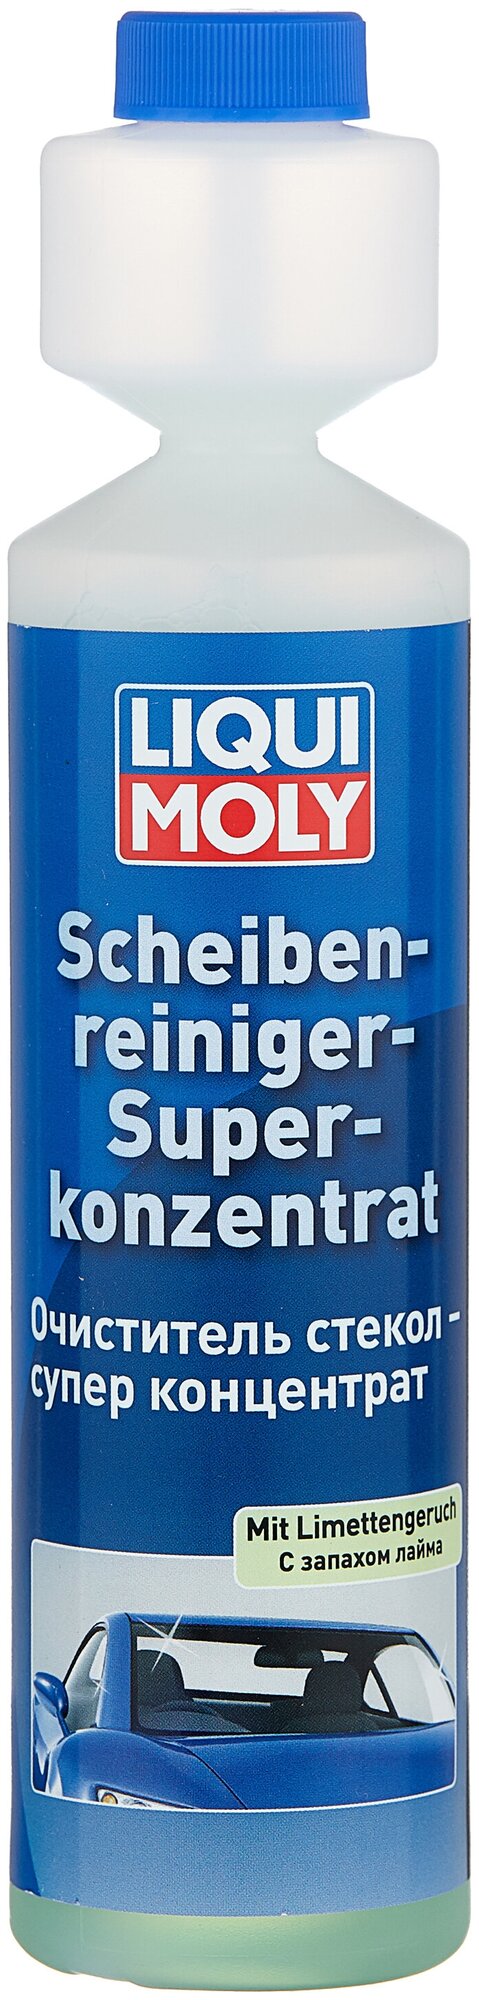 2385 Scheiben-Reiniger-Super Konzentrat     () 0.25 .